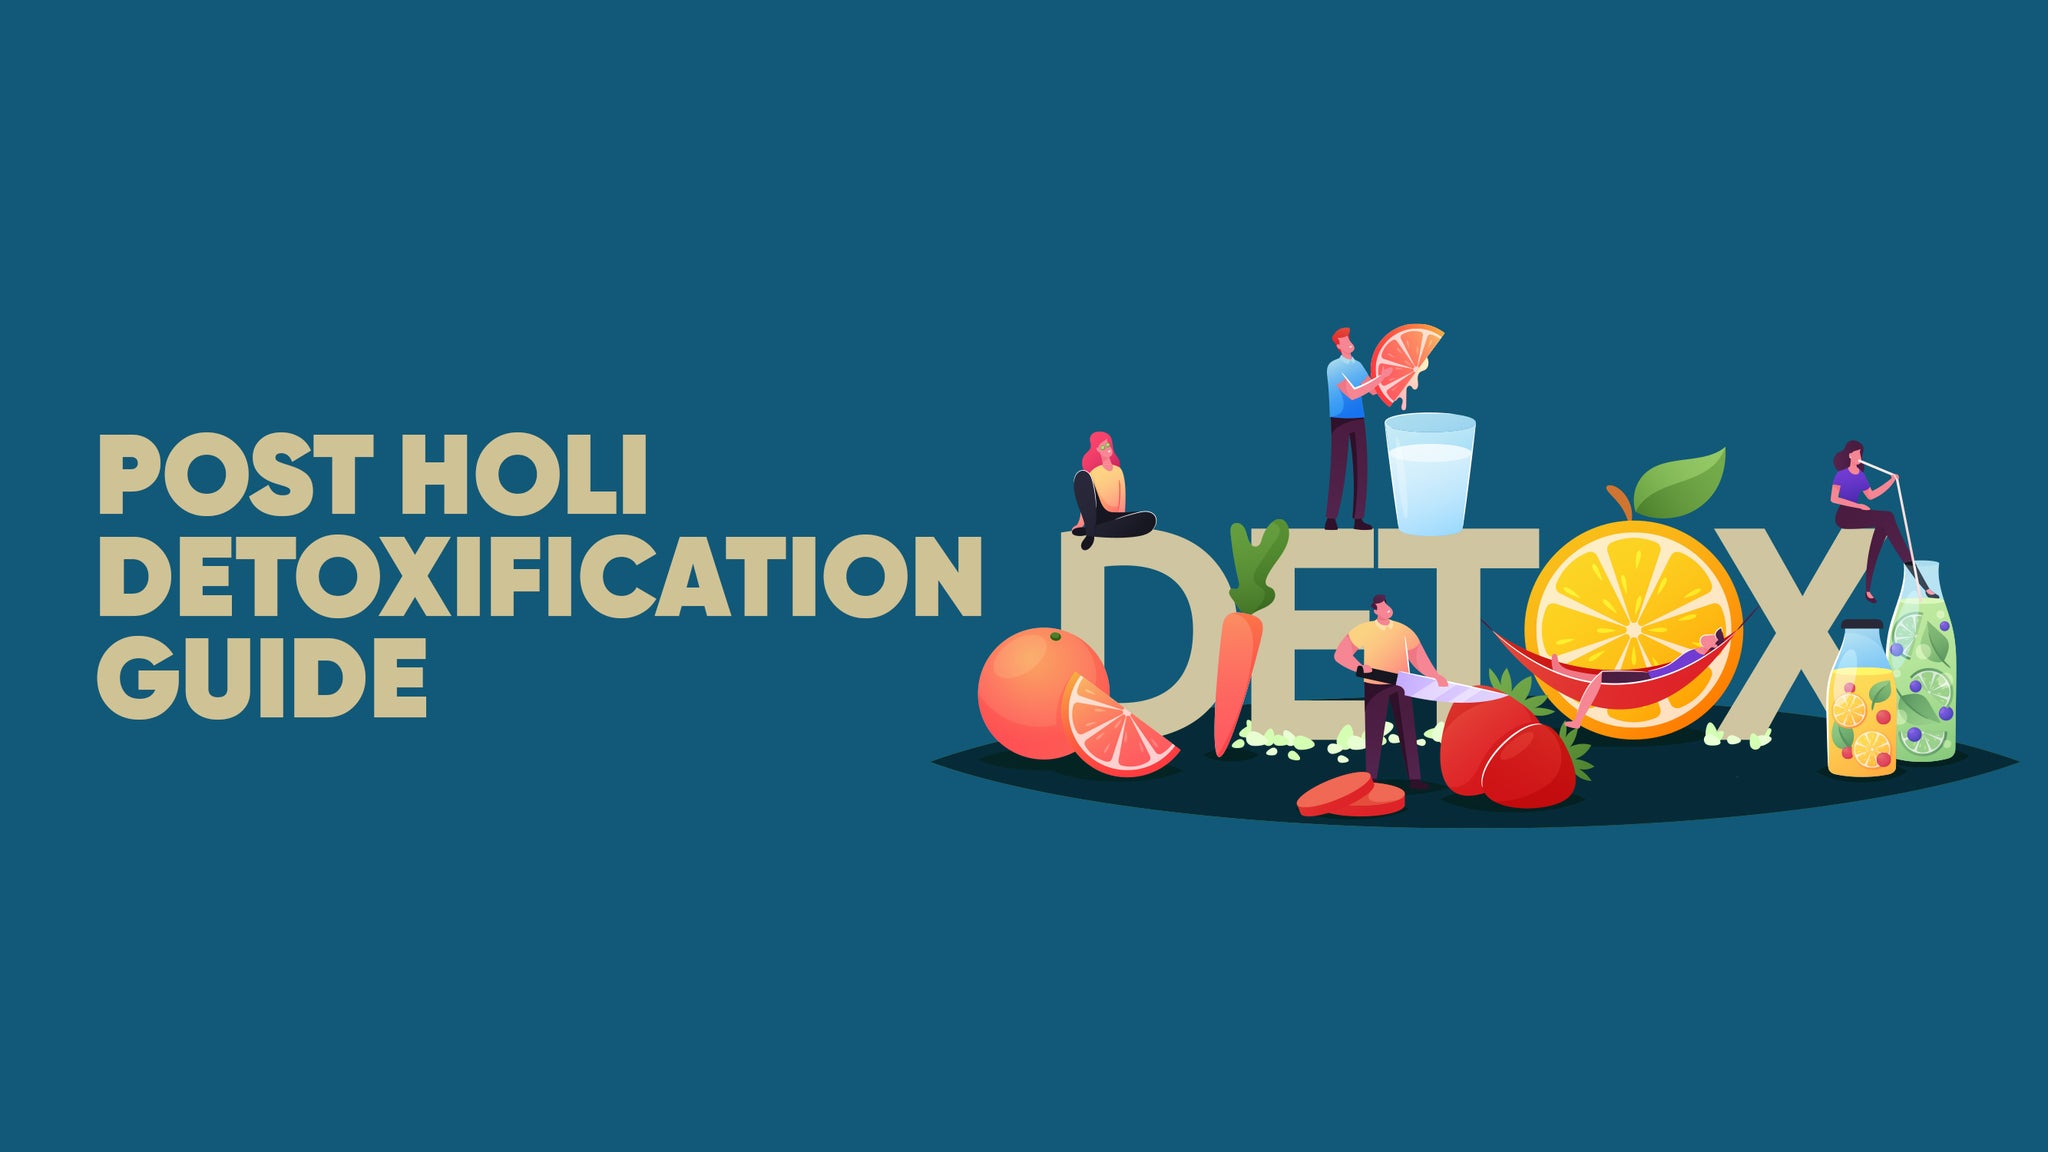 Post Holi Detoxification Guide